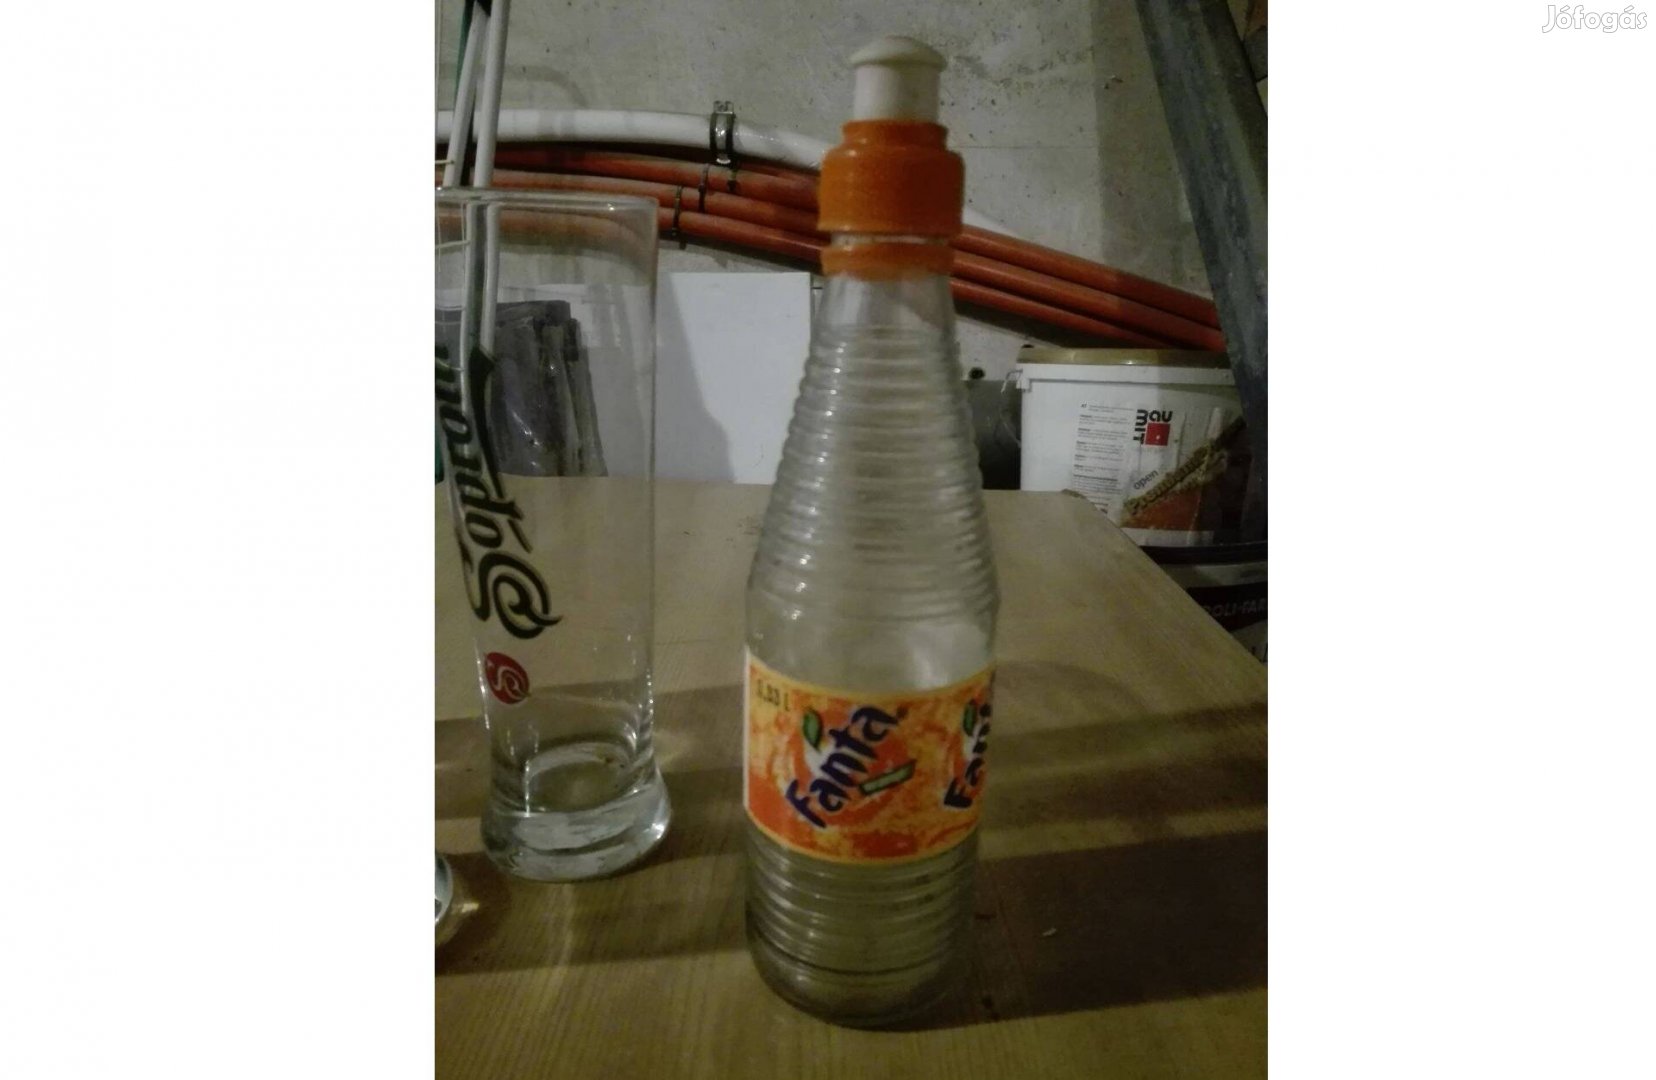 Soproni söröspohár és eredeti üveg Fanta üveg